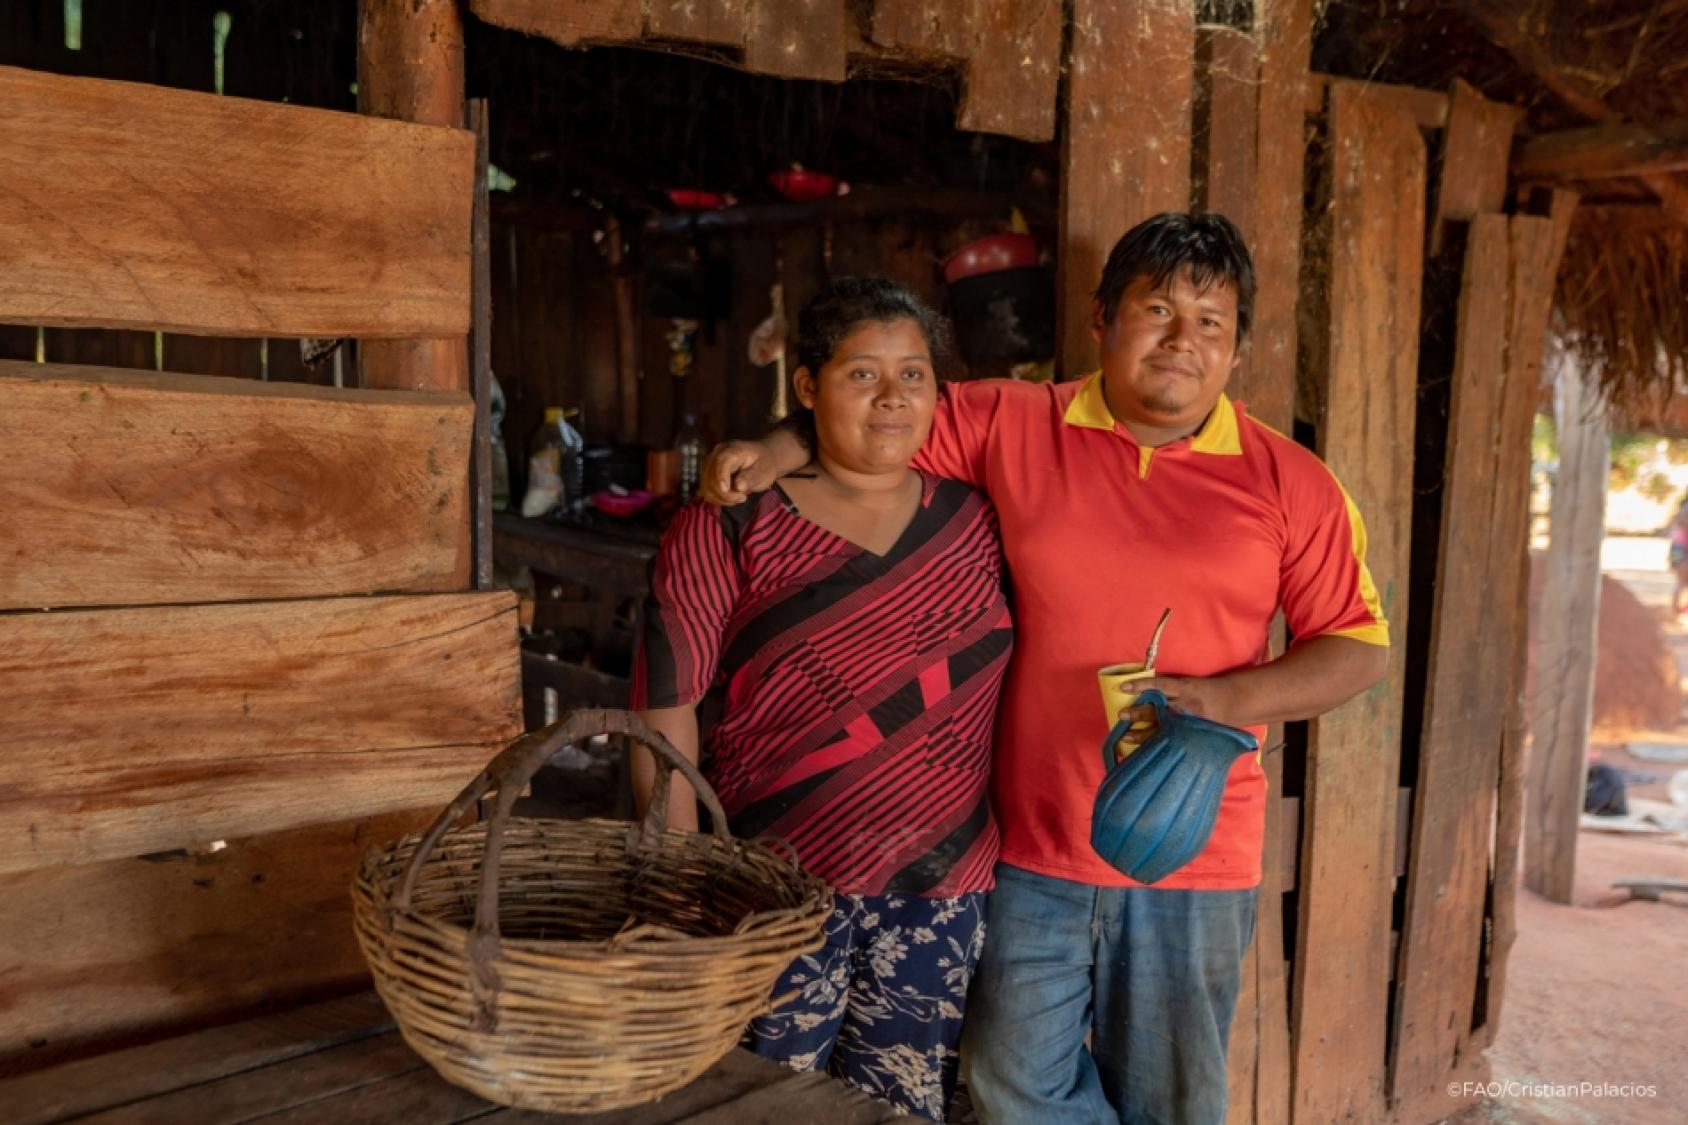 El proyecto utiliza los conocimientos y técnicas ancestrales del Pueblo Indígena Ava Guaraní para cosechar cultivos de una forma sostenible y ambientalmente racional que proteja el bosque y a sus habitantes en el futuro.